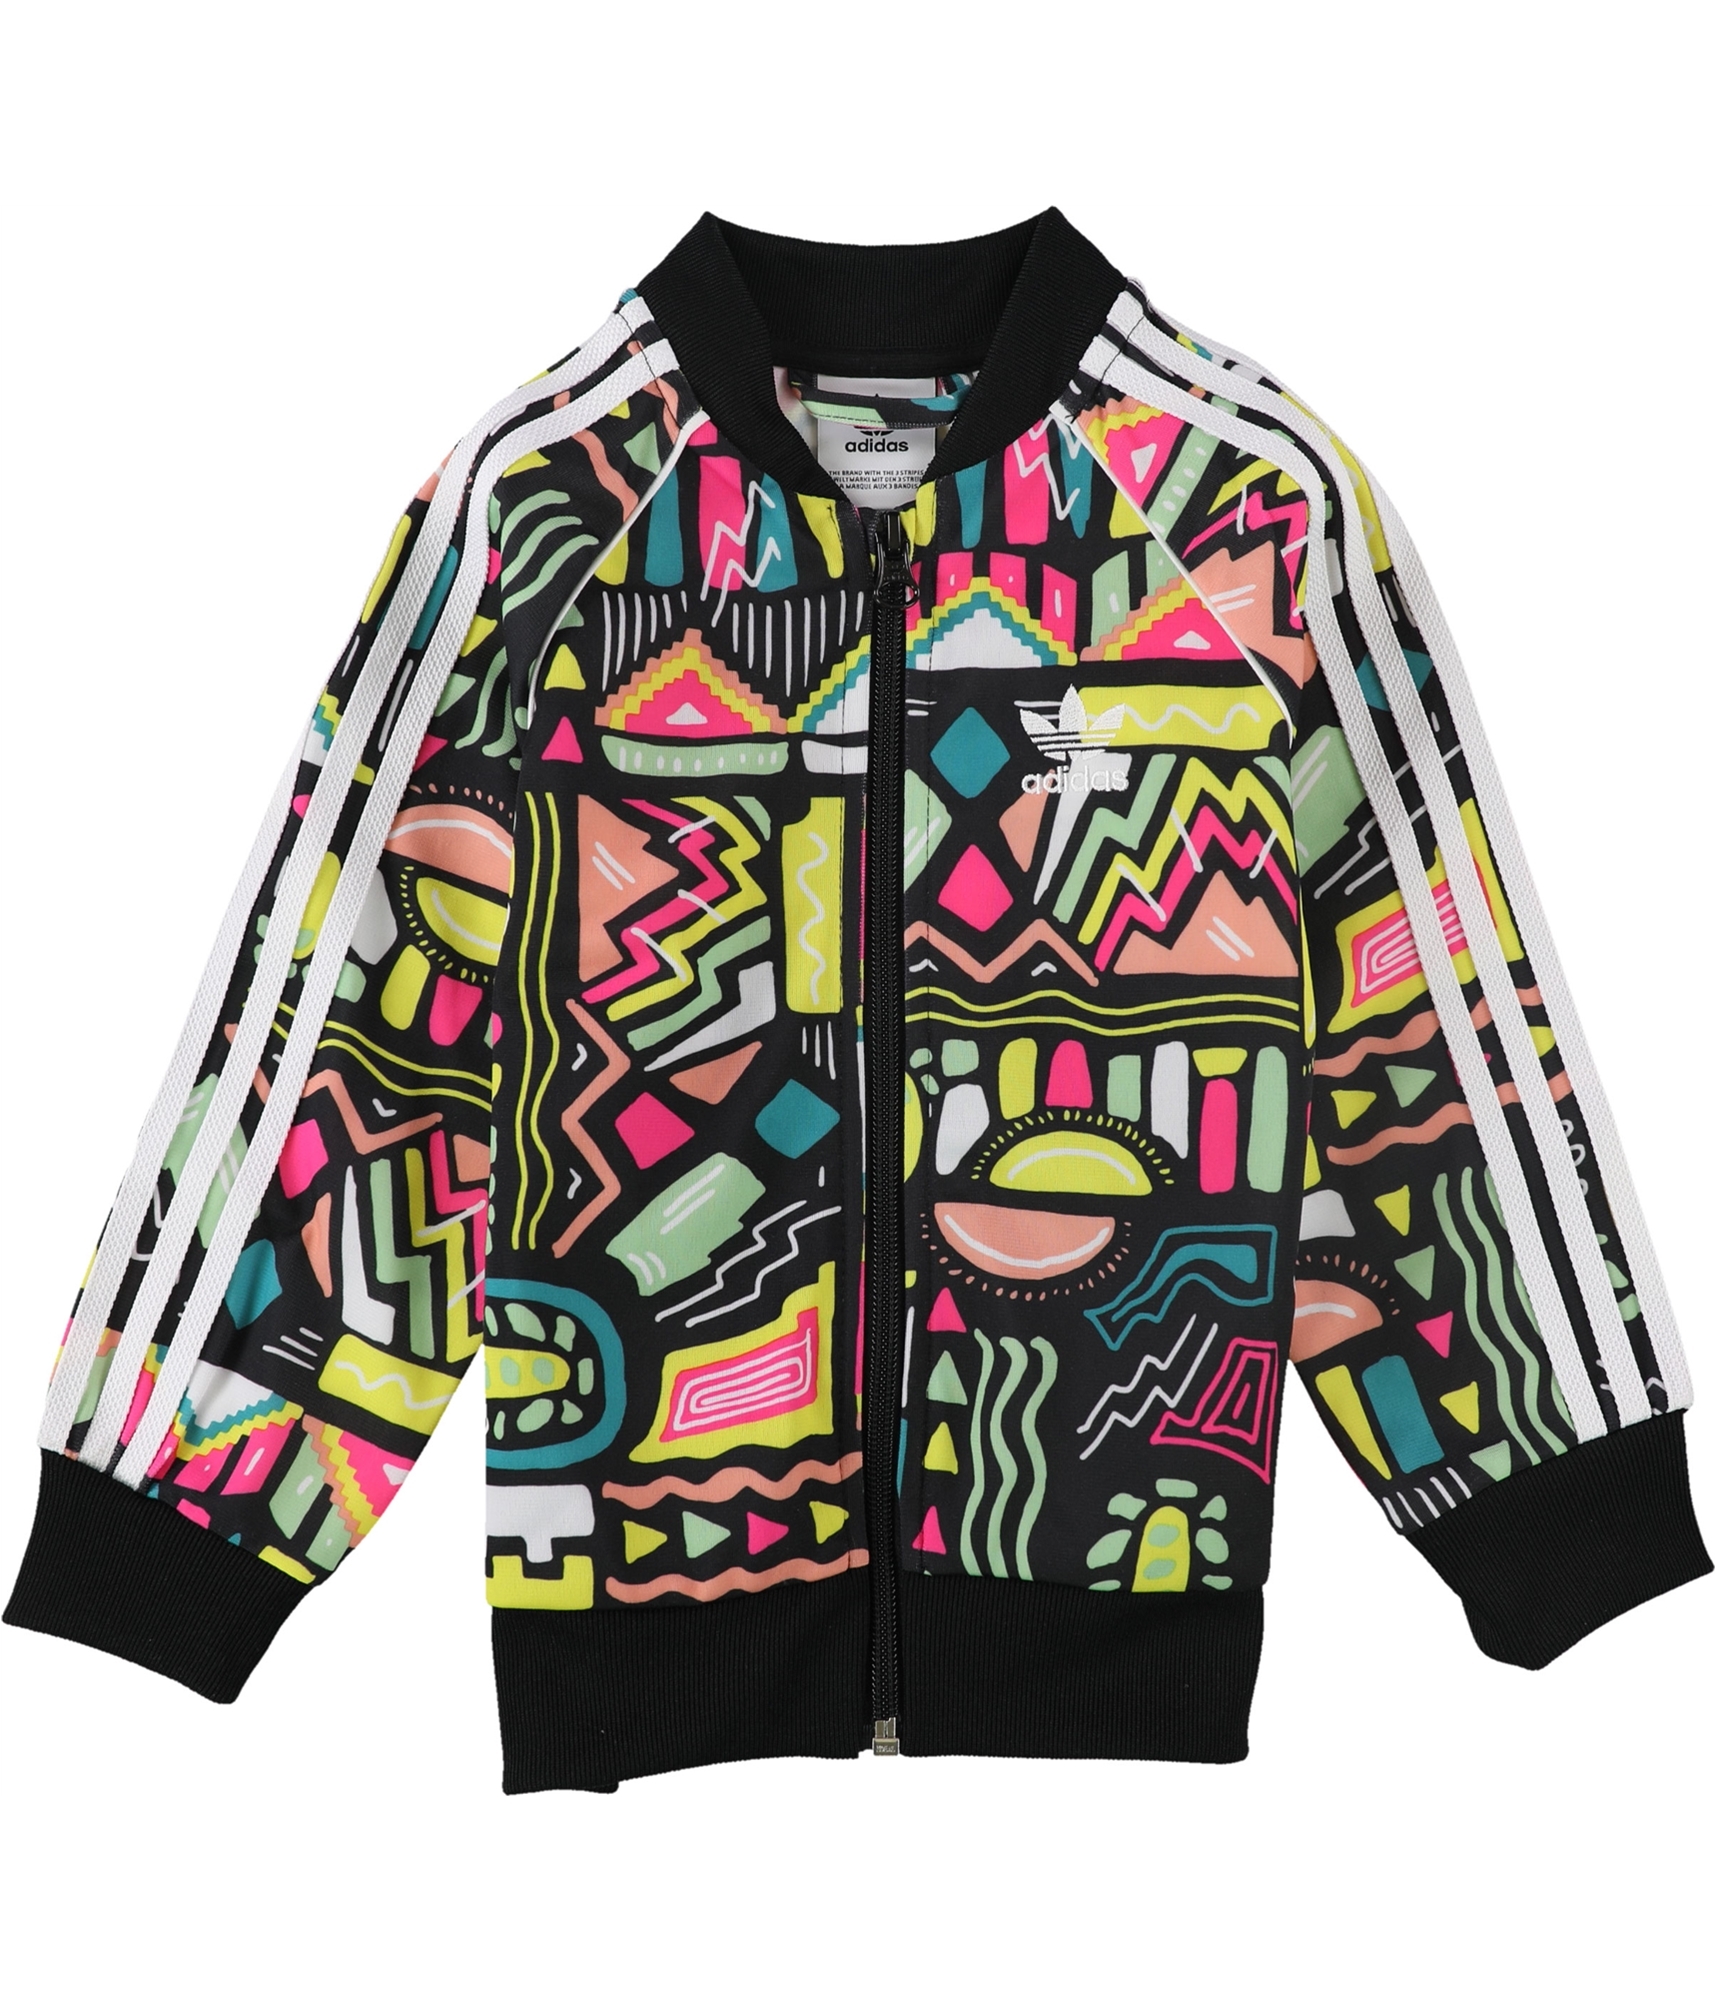 Prescribir Fanático Mendicidad Buy a Girls Adidas Superstar Track Jacket Sweatshirt Online | TagsWeekly.com